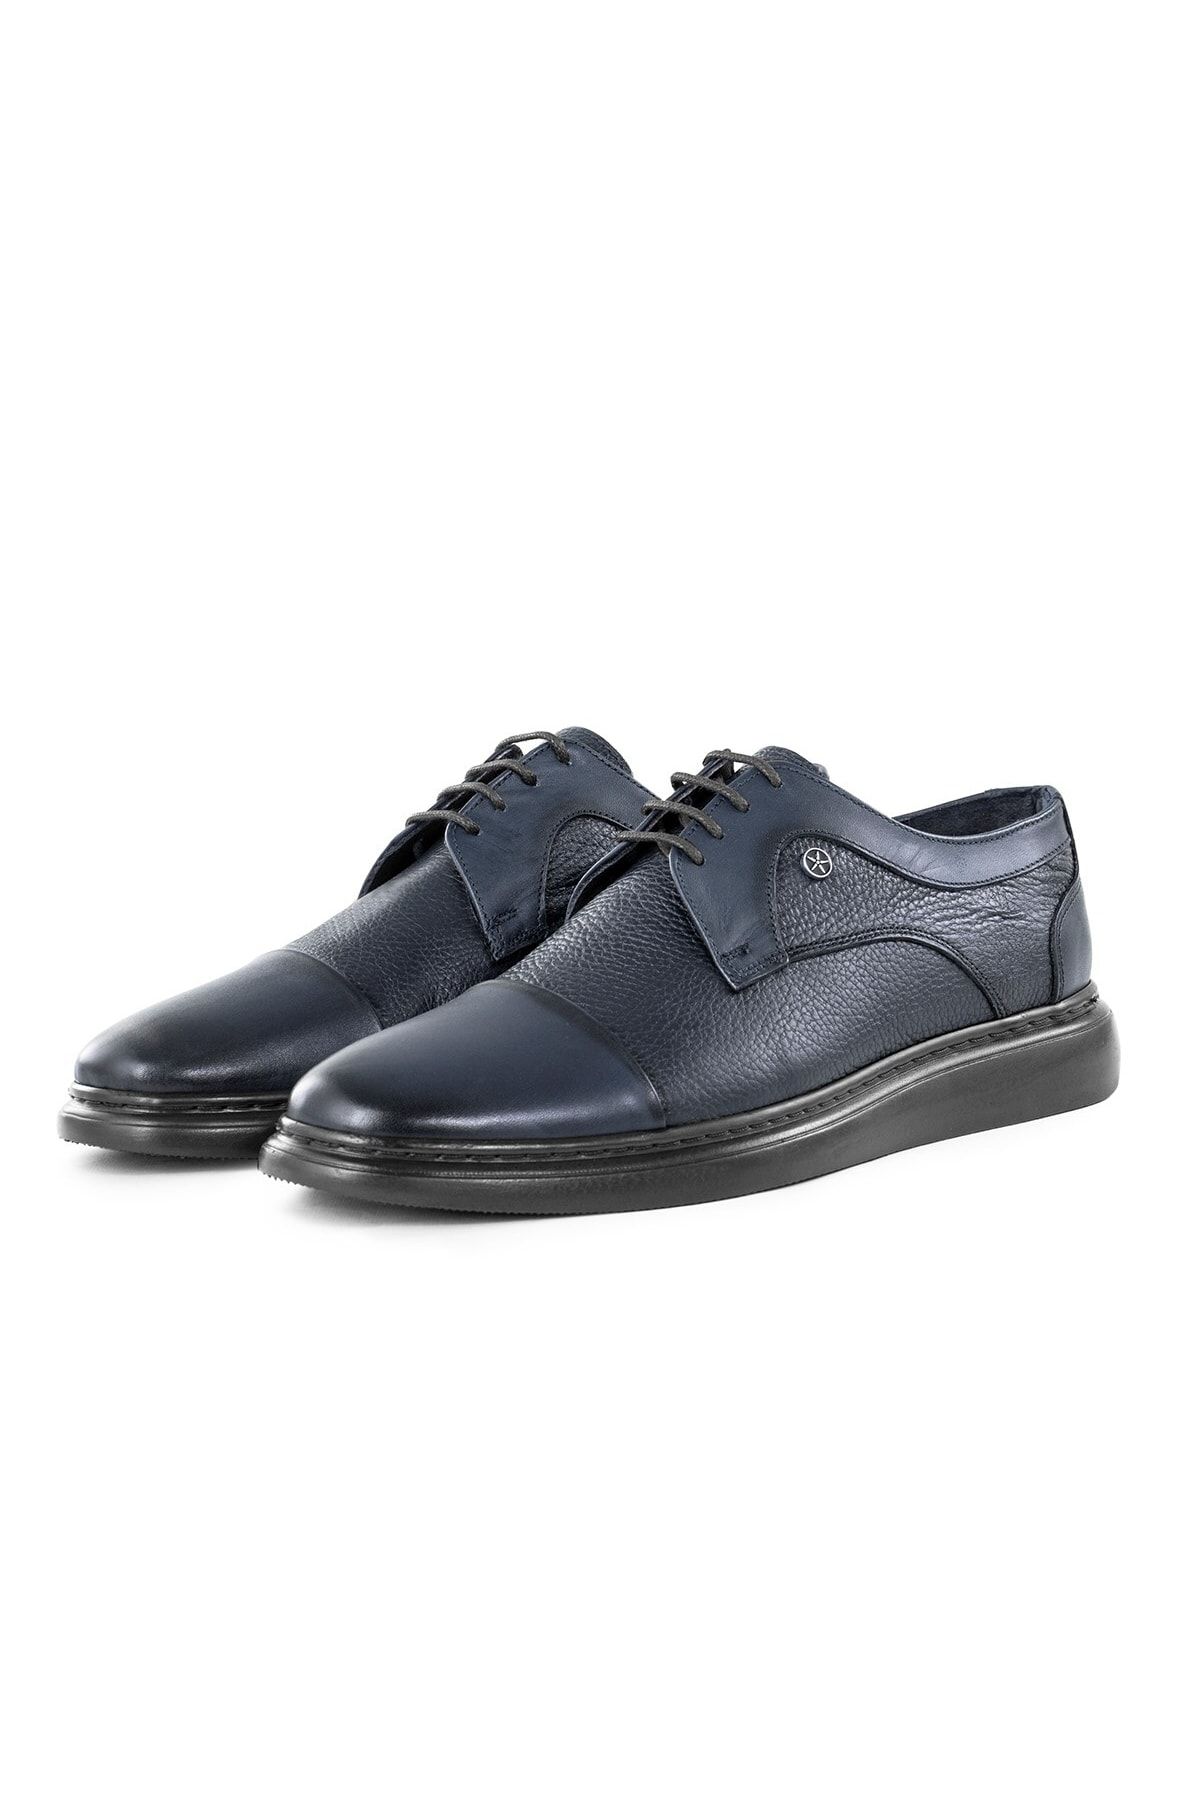 Ducavelli Stern Hakiki Deri Erkek Günlük Klasik Ayakkabı, Hakiki Deri Klasik Ayakkabı, Derby Klasik